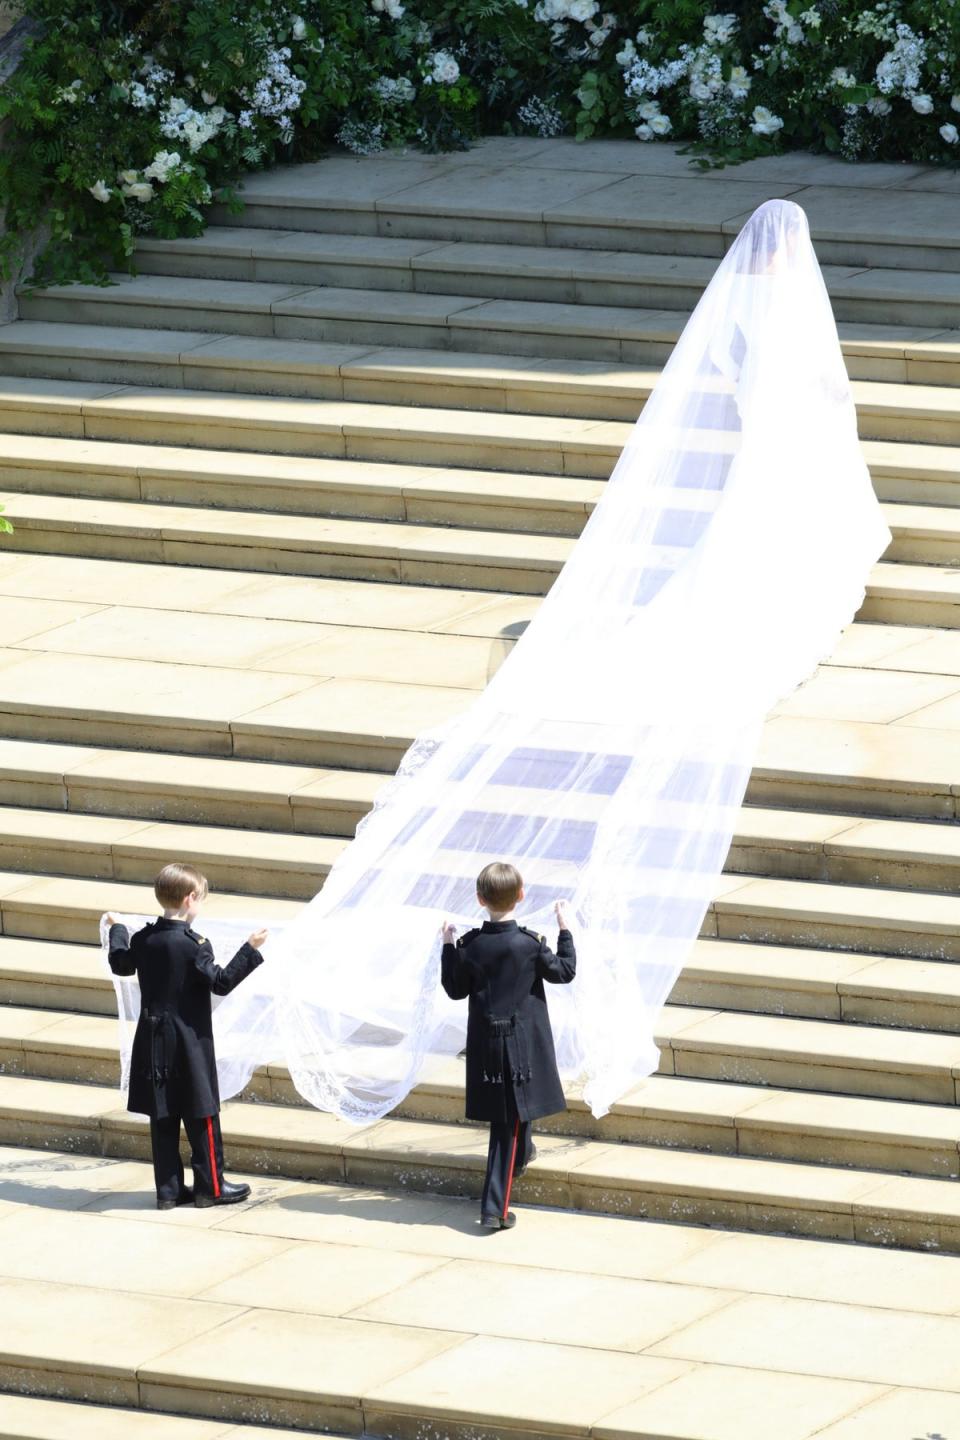 Meghan Markle arriving at her royal wedding ceremony (Owen Cooban/MoD/EPA)